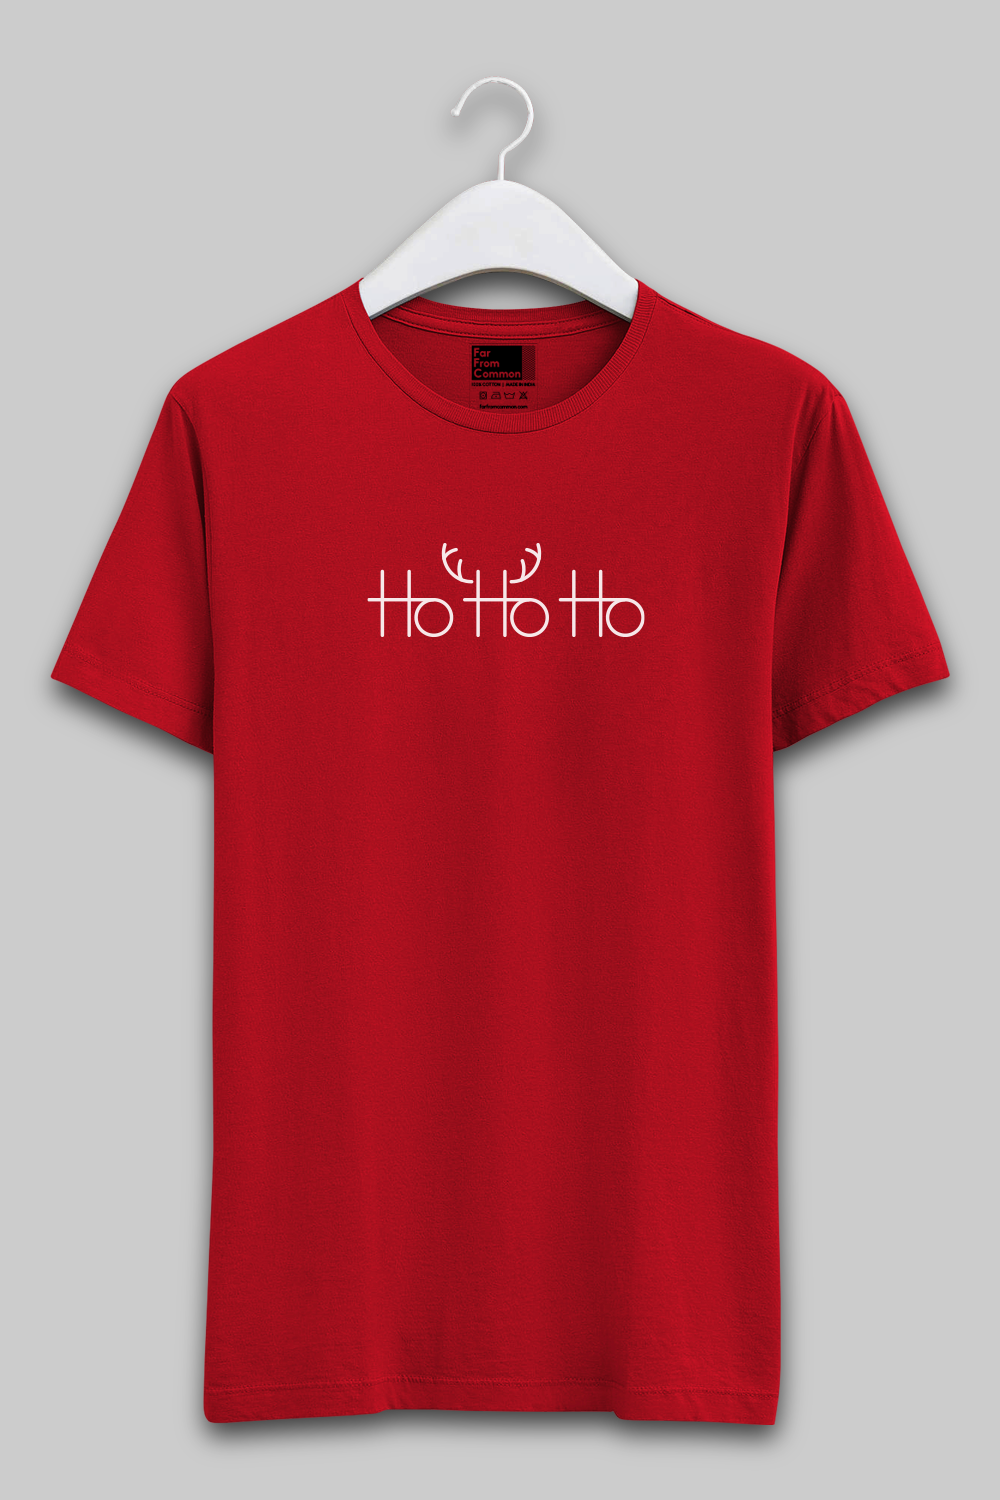 Ho Ho Ho Red Unisex T-shirt